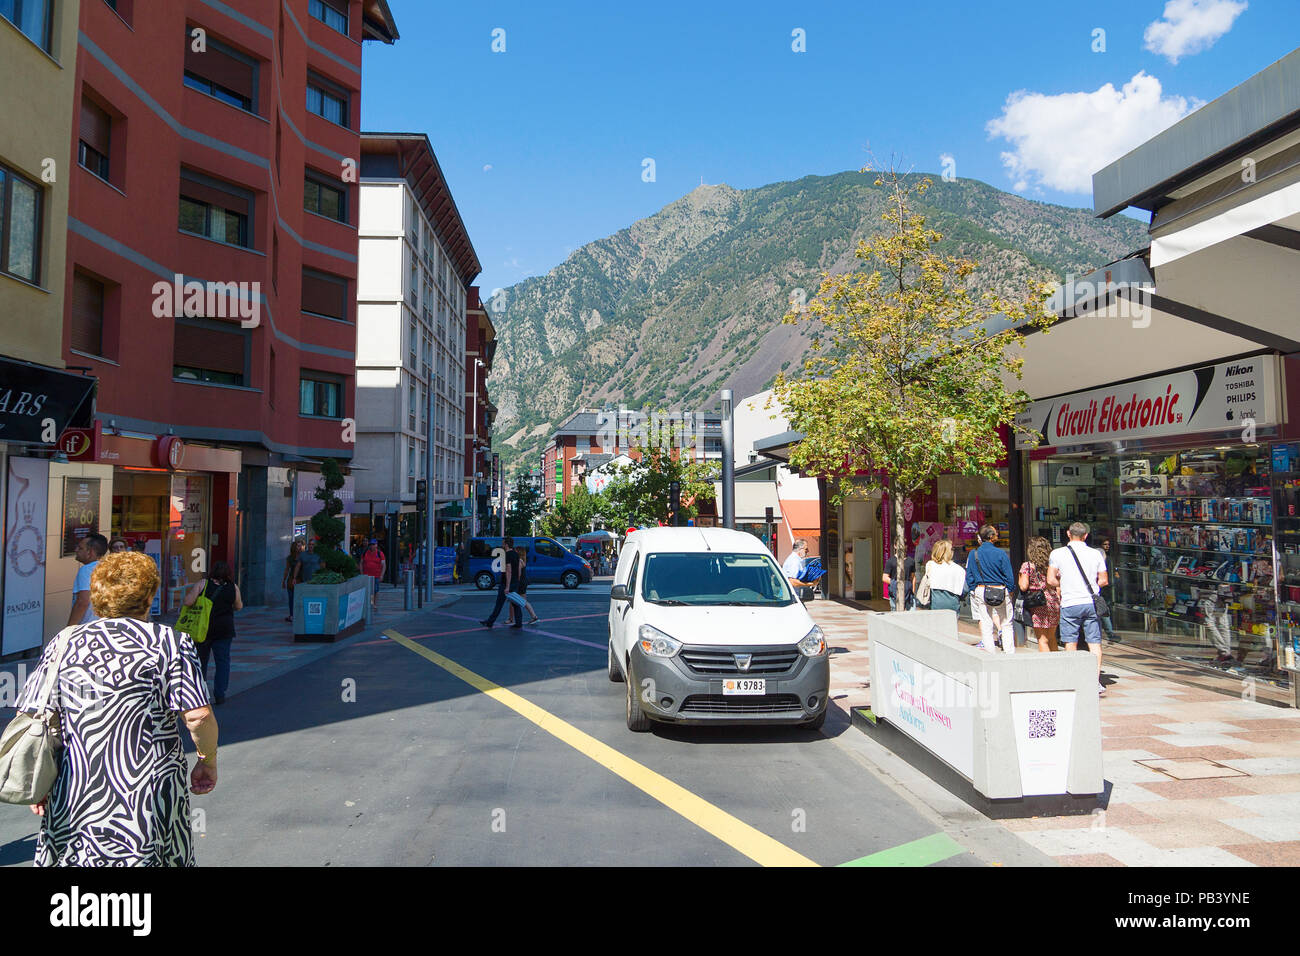 Andorra la Vella, Andorra - August 14, 2017: Andorra ist das Land mit der  kleinsten der Gewerbesteuer. Es handelt sich um einen touristischen und  kommerziellen Zentrum Europas Stockfotografie - Alamy